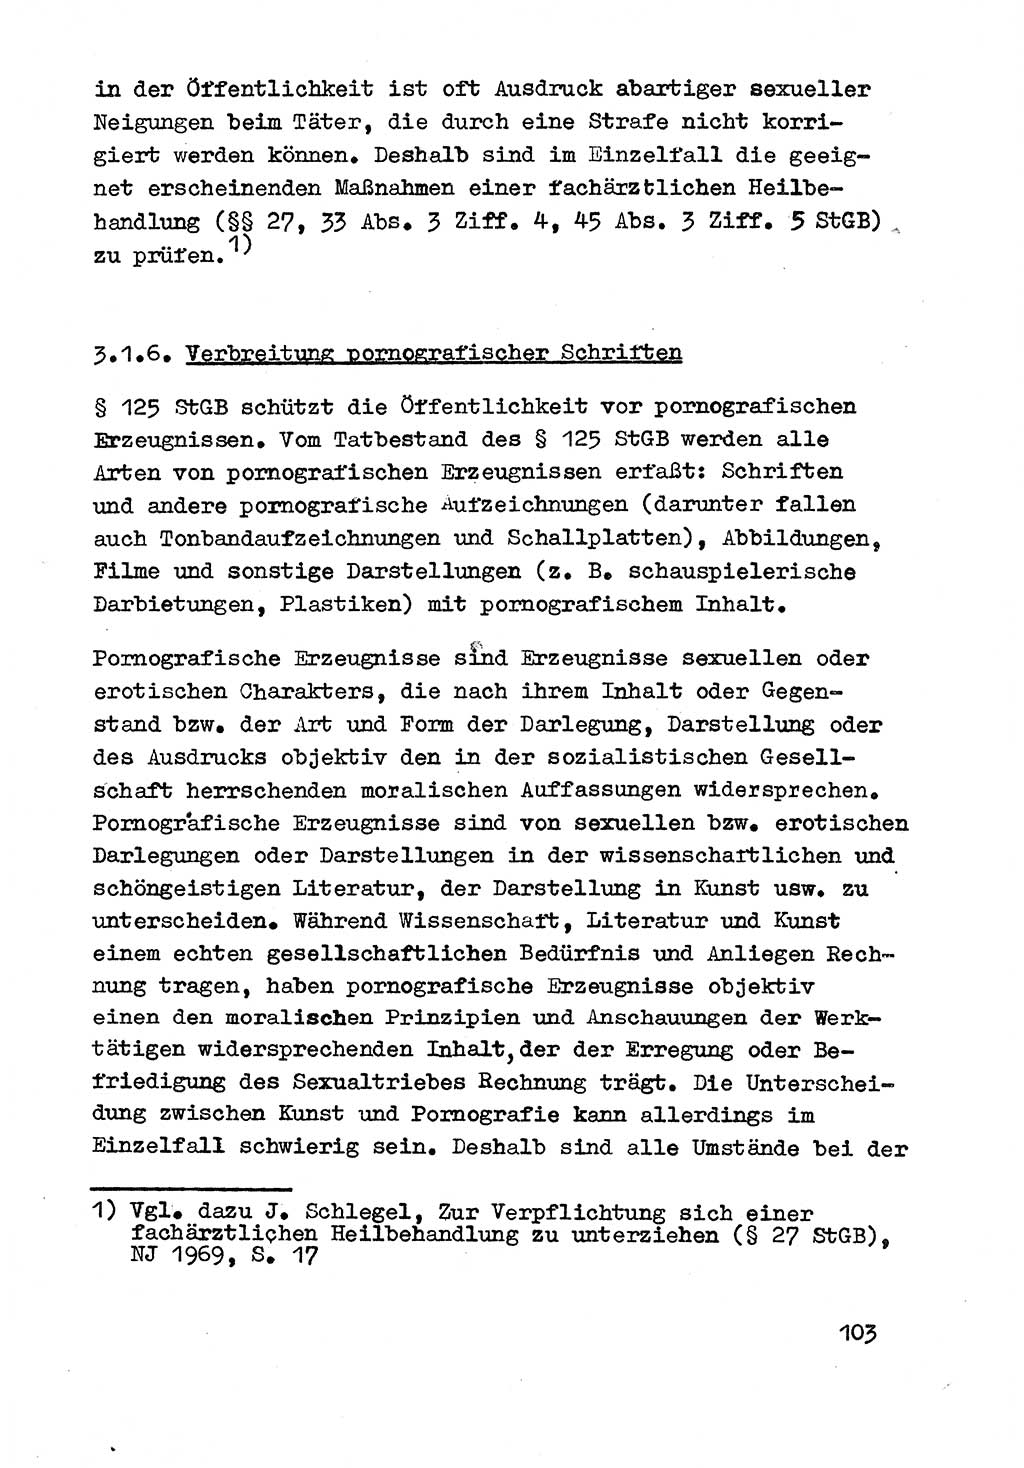 Strafrecht der DDR (Deutsche Demokratische Republik), Besonderer Teil, Lehrmaterial, Heft 3 1969, Seite 103 (Strafr. DDR BT Lehrmat. H. 3 1969, S. 103)